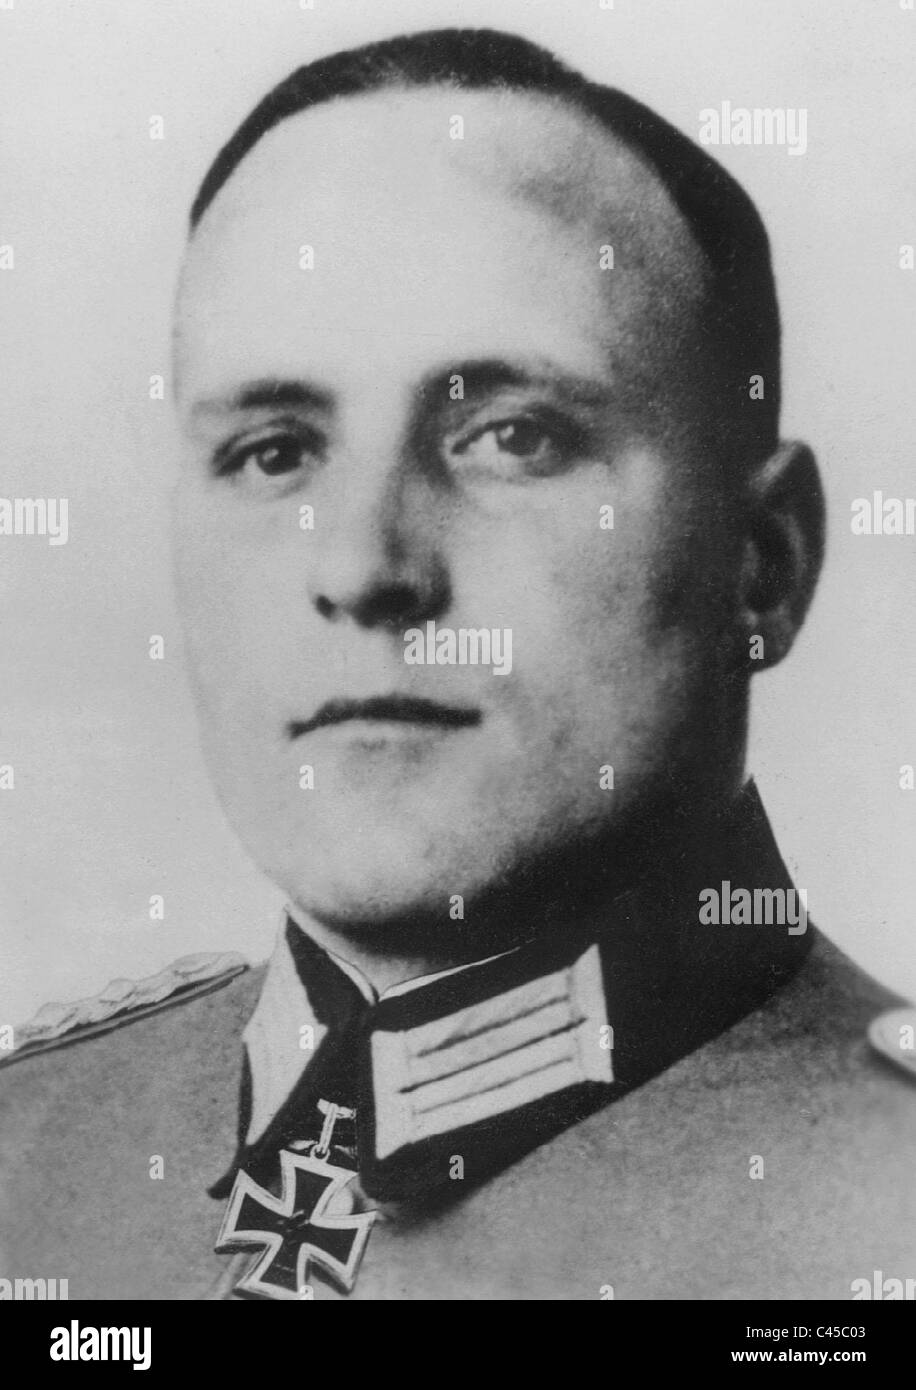 Colonel Count von Sponeck, 1942 Stock Photo